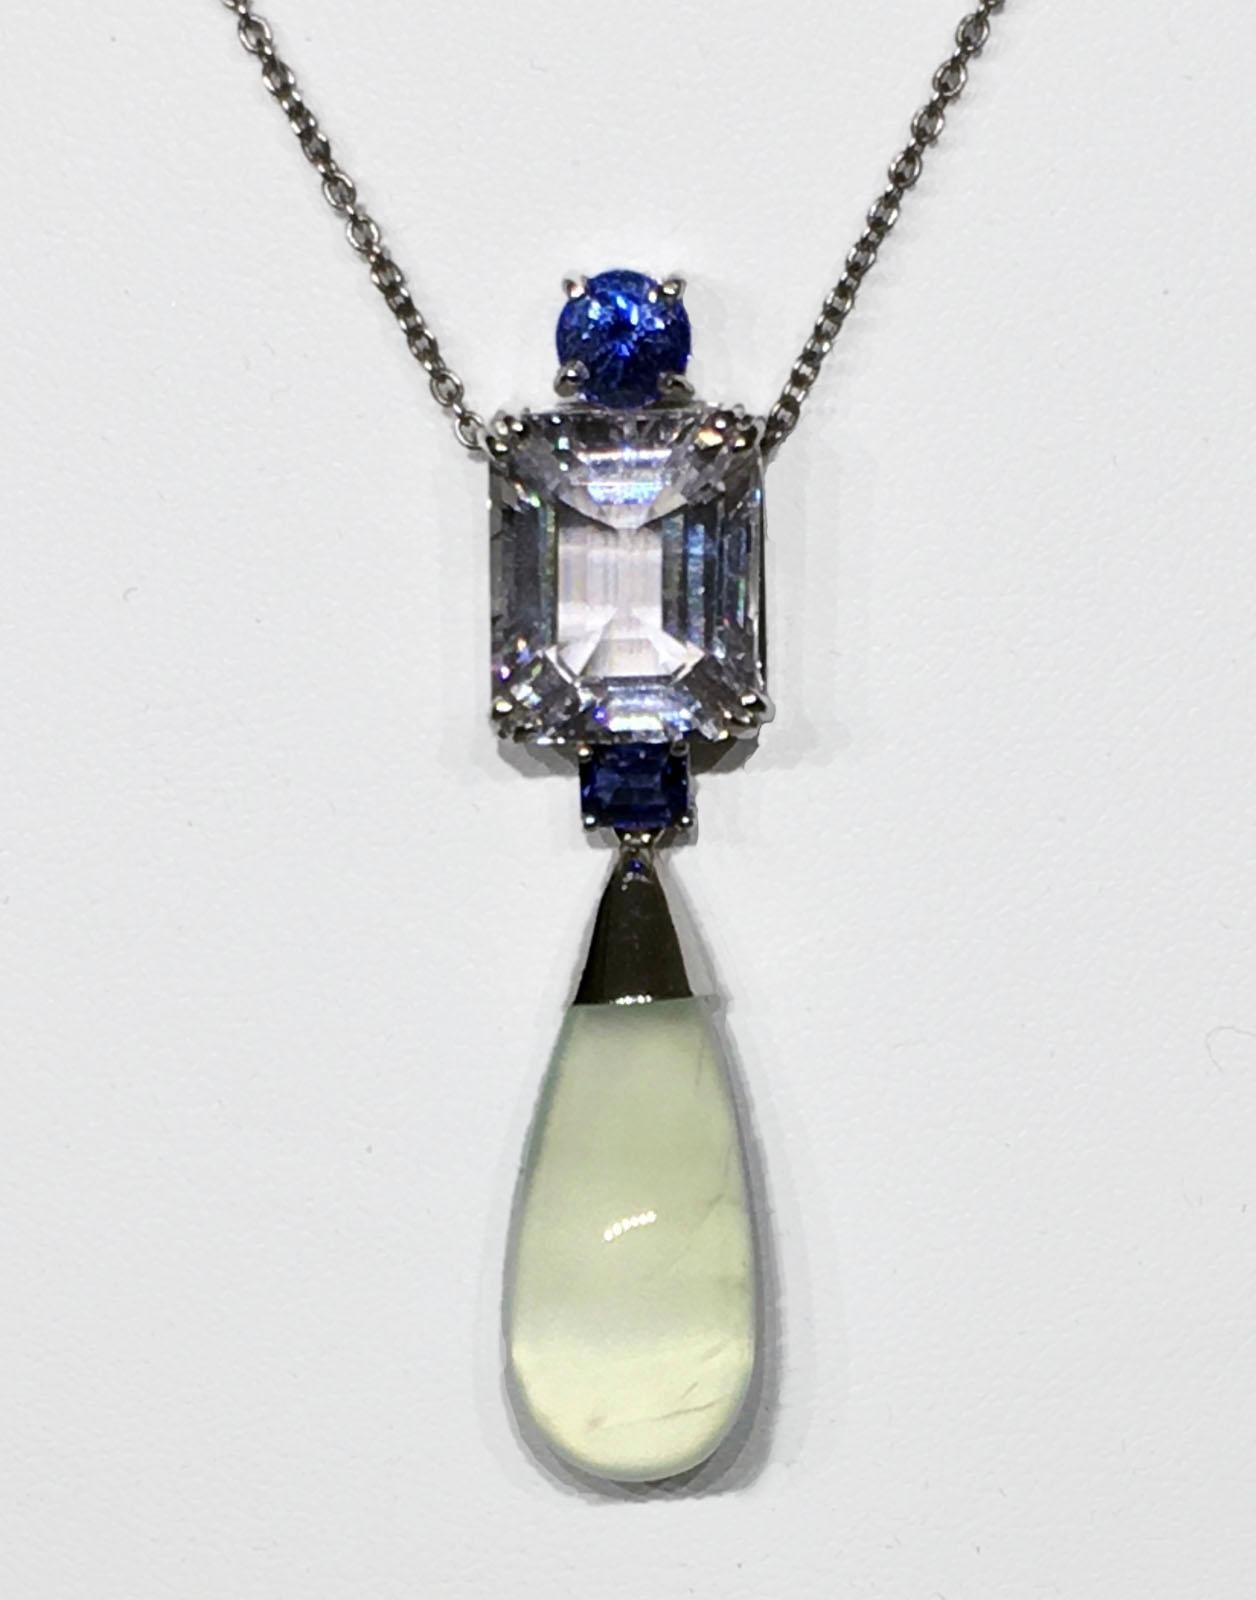 Emerald Cut 18kt White Gold Pendant with Sapphire, Morganite and Prehnite